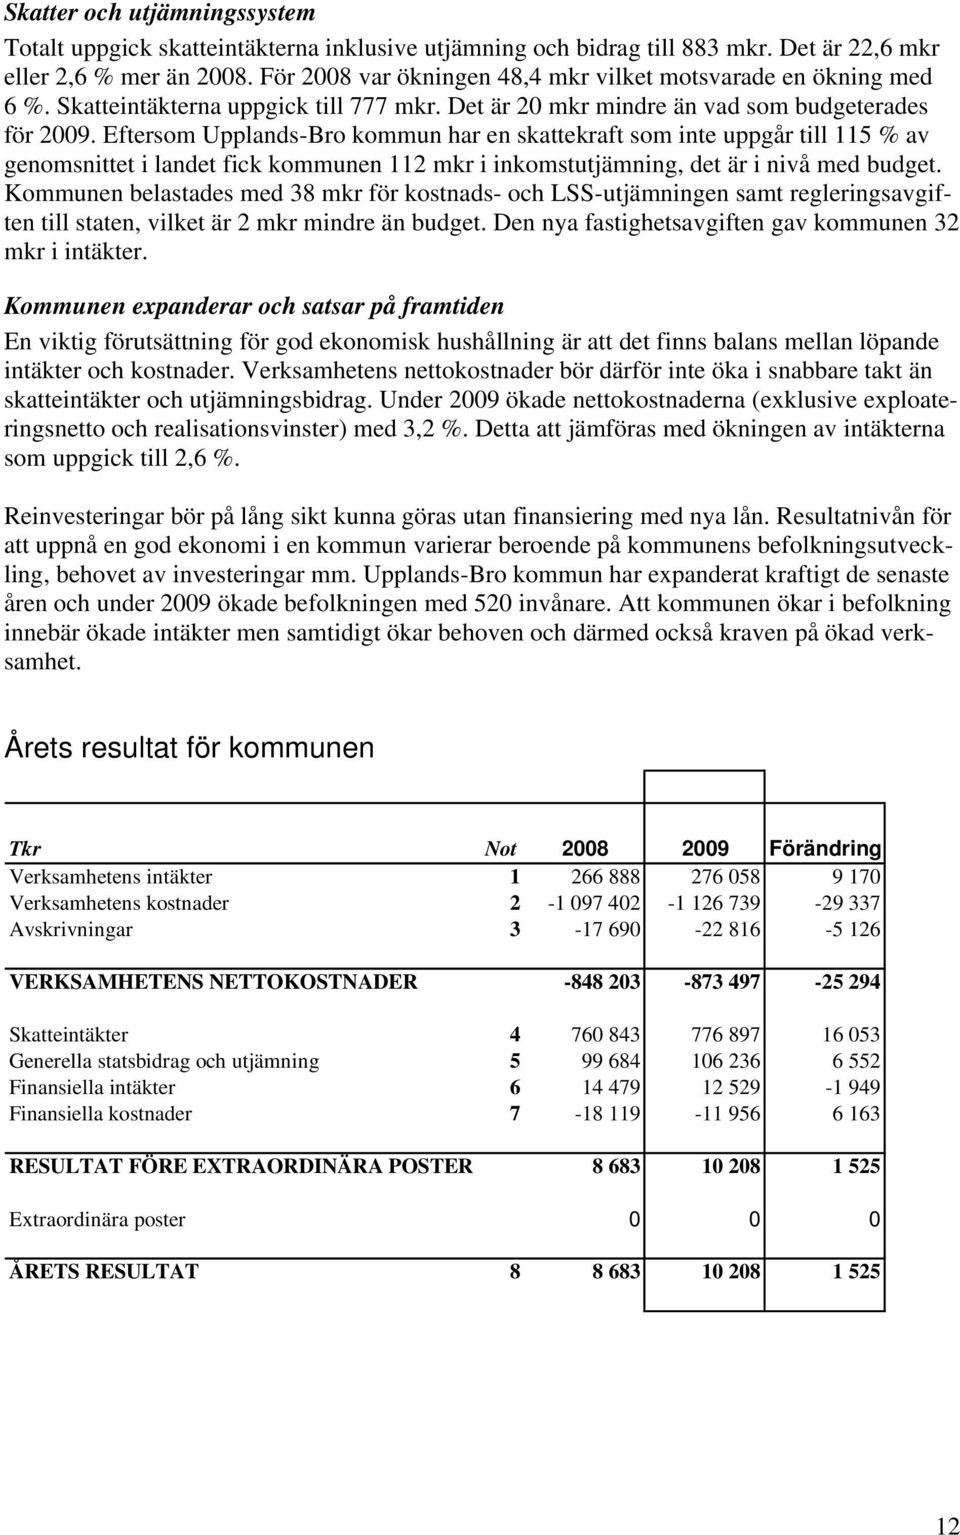 Eftersom Upplands-Bro kommun har en skattekraft som inte uppgår till 115 % av genomsnittet i landet fick kommunen 112 mkr i inkomstutjämning, det är i nivå med budget.